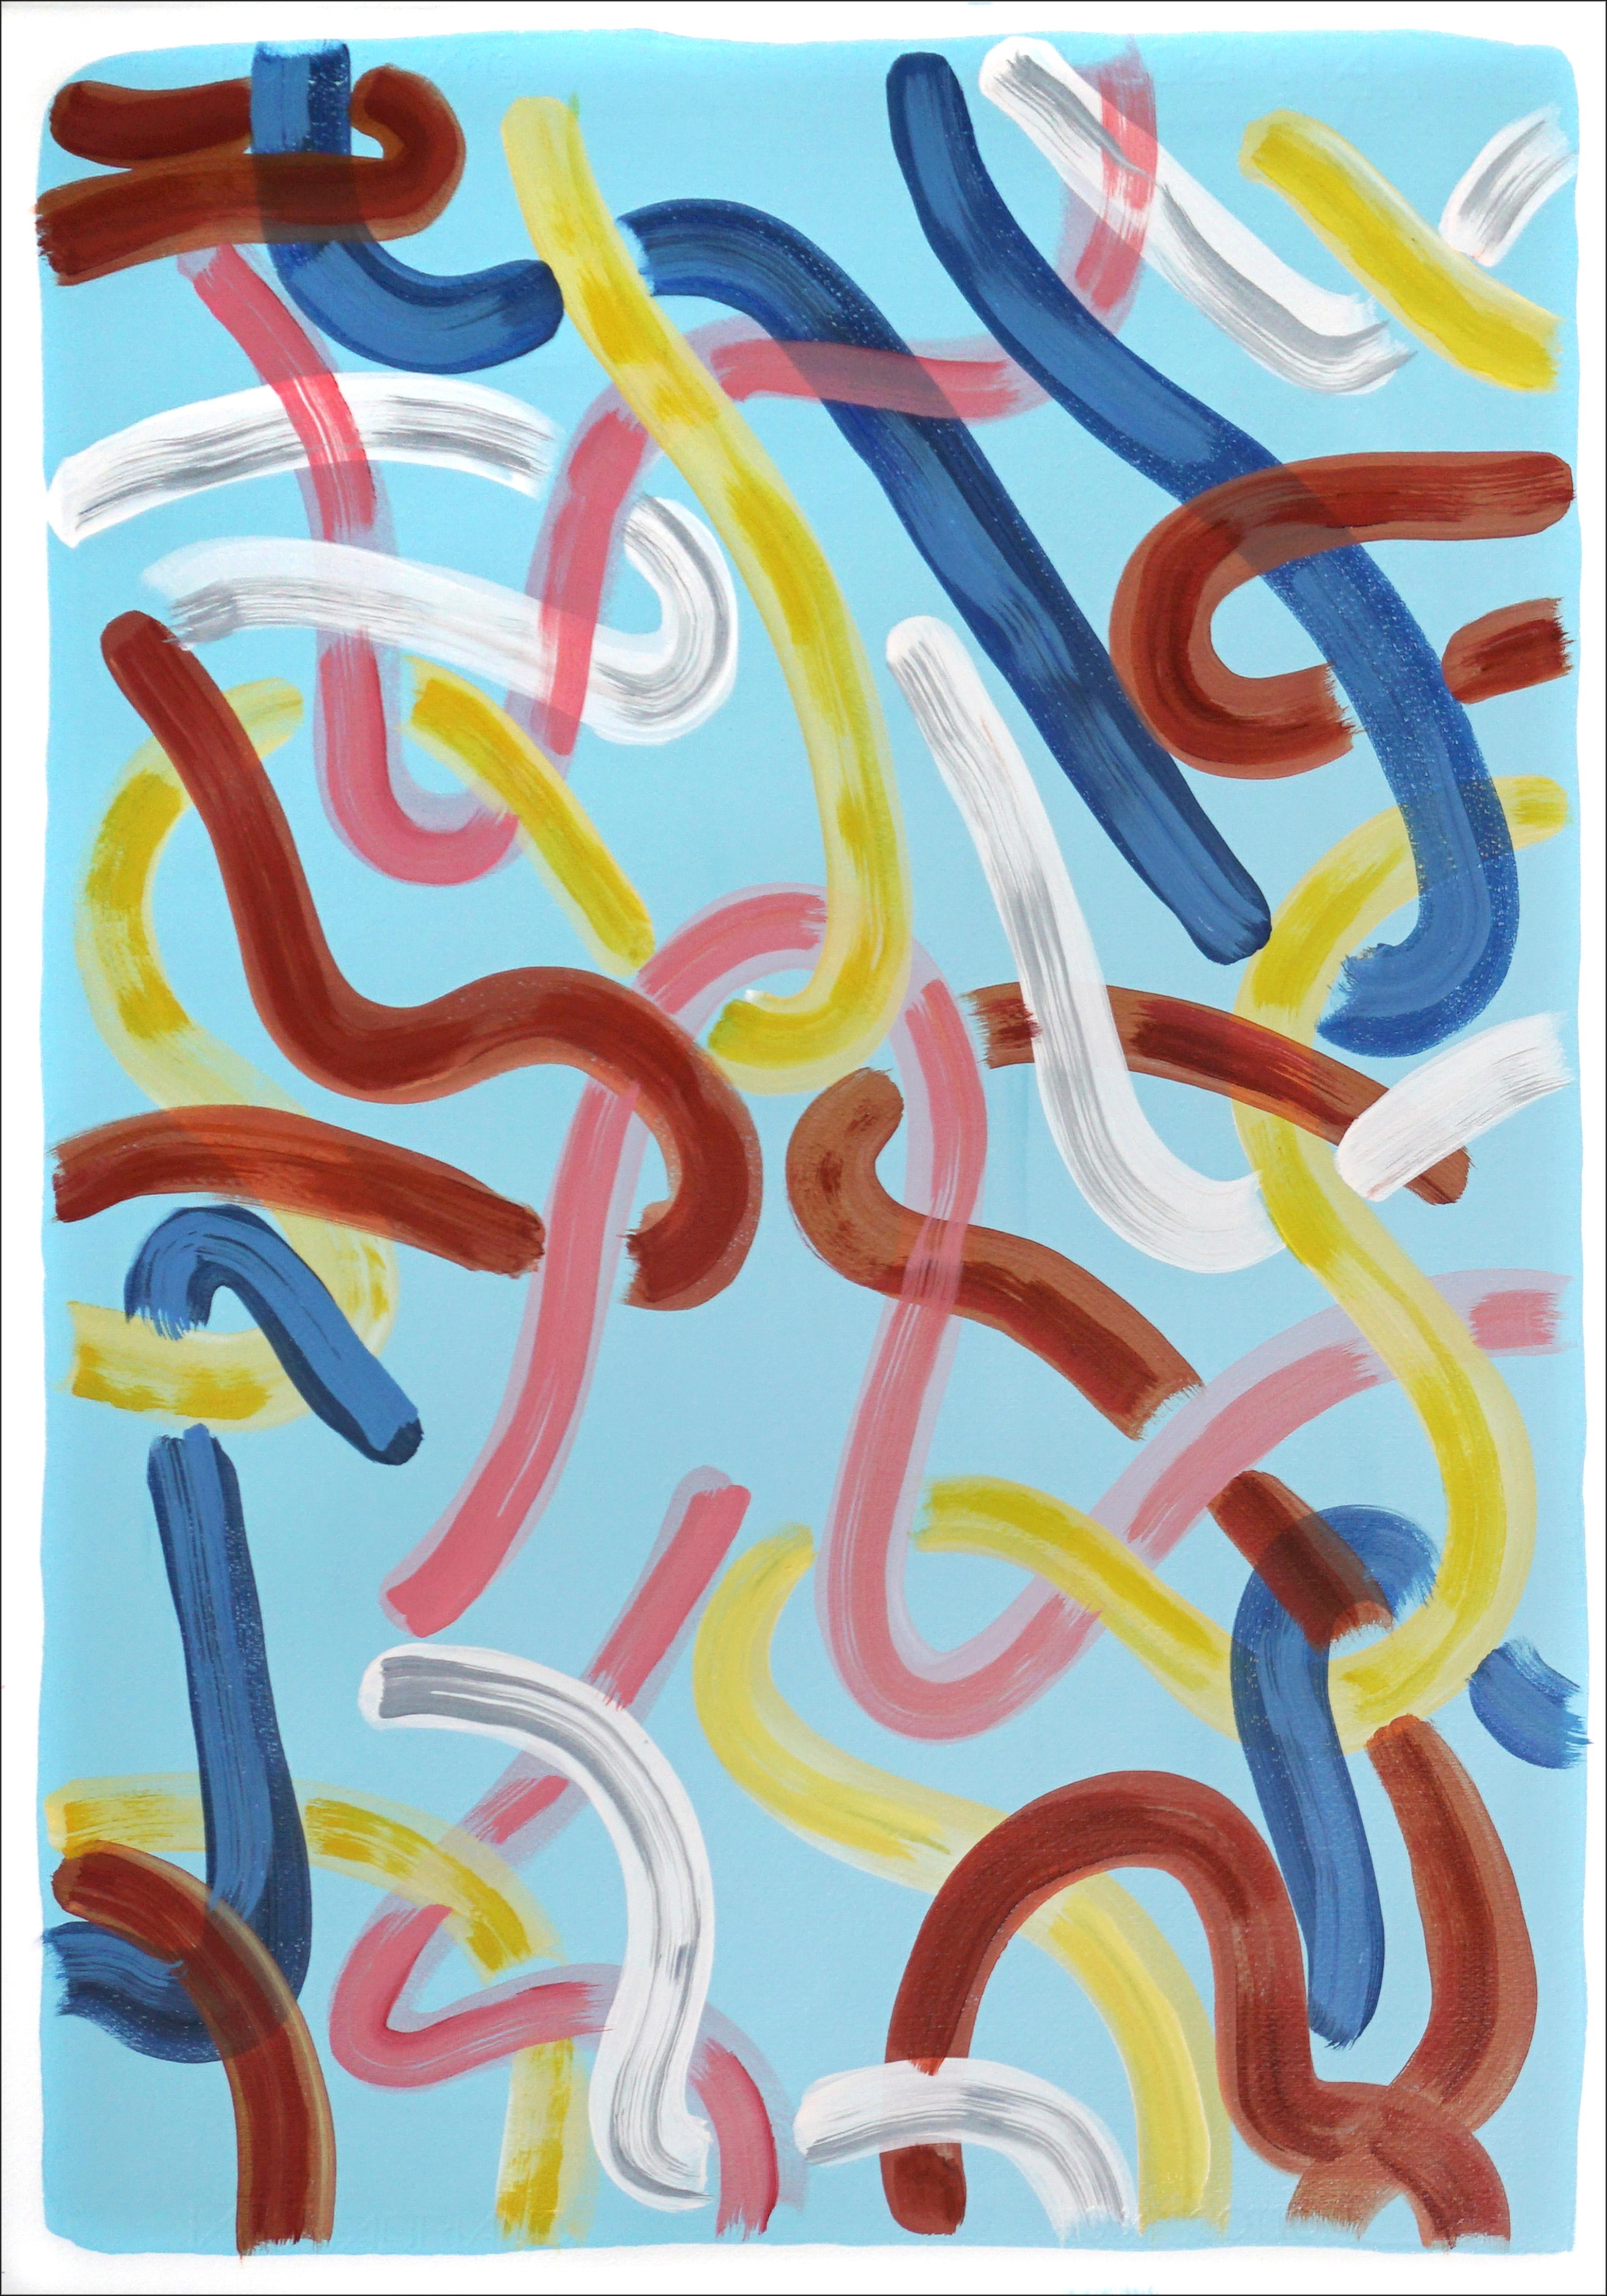 Urban Brushstrokes auf Babyblau, Funky Style, Rend und Gelbe Gesten Diptychon (Abstrakter Expressionismus), Painting, von Natalia Roman